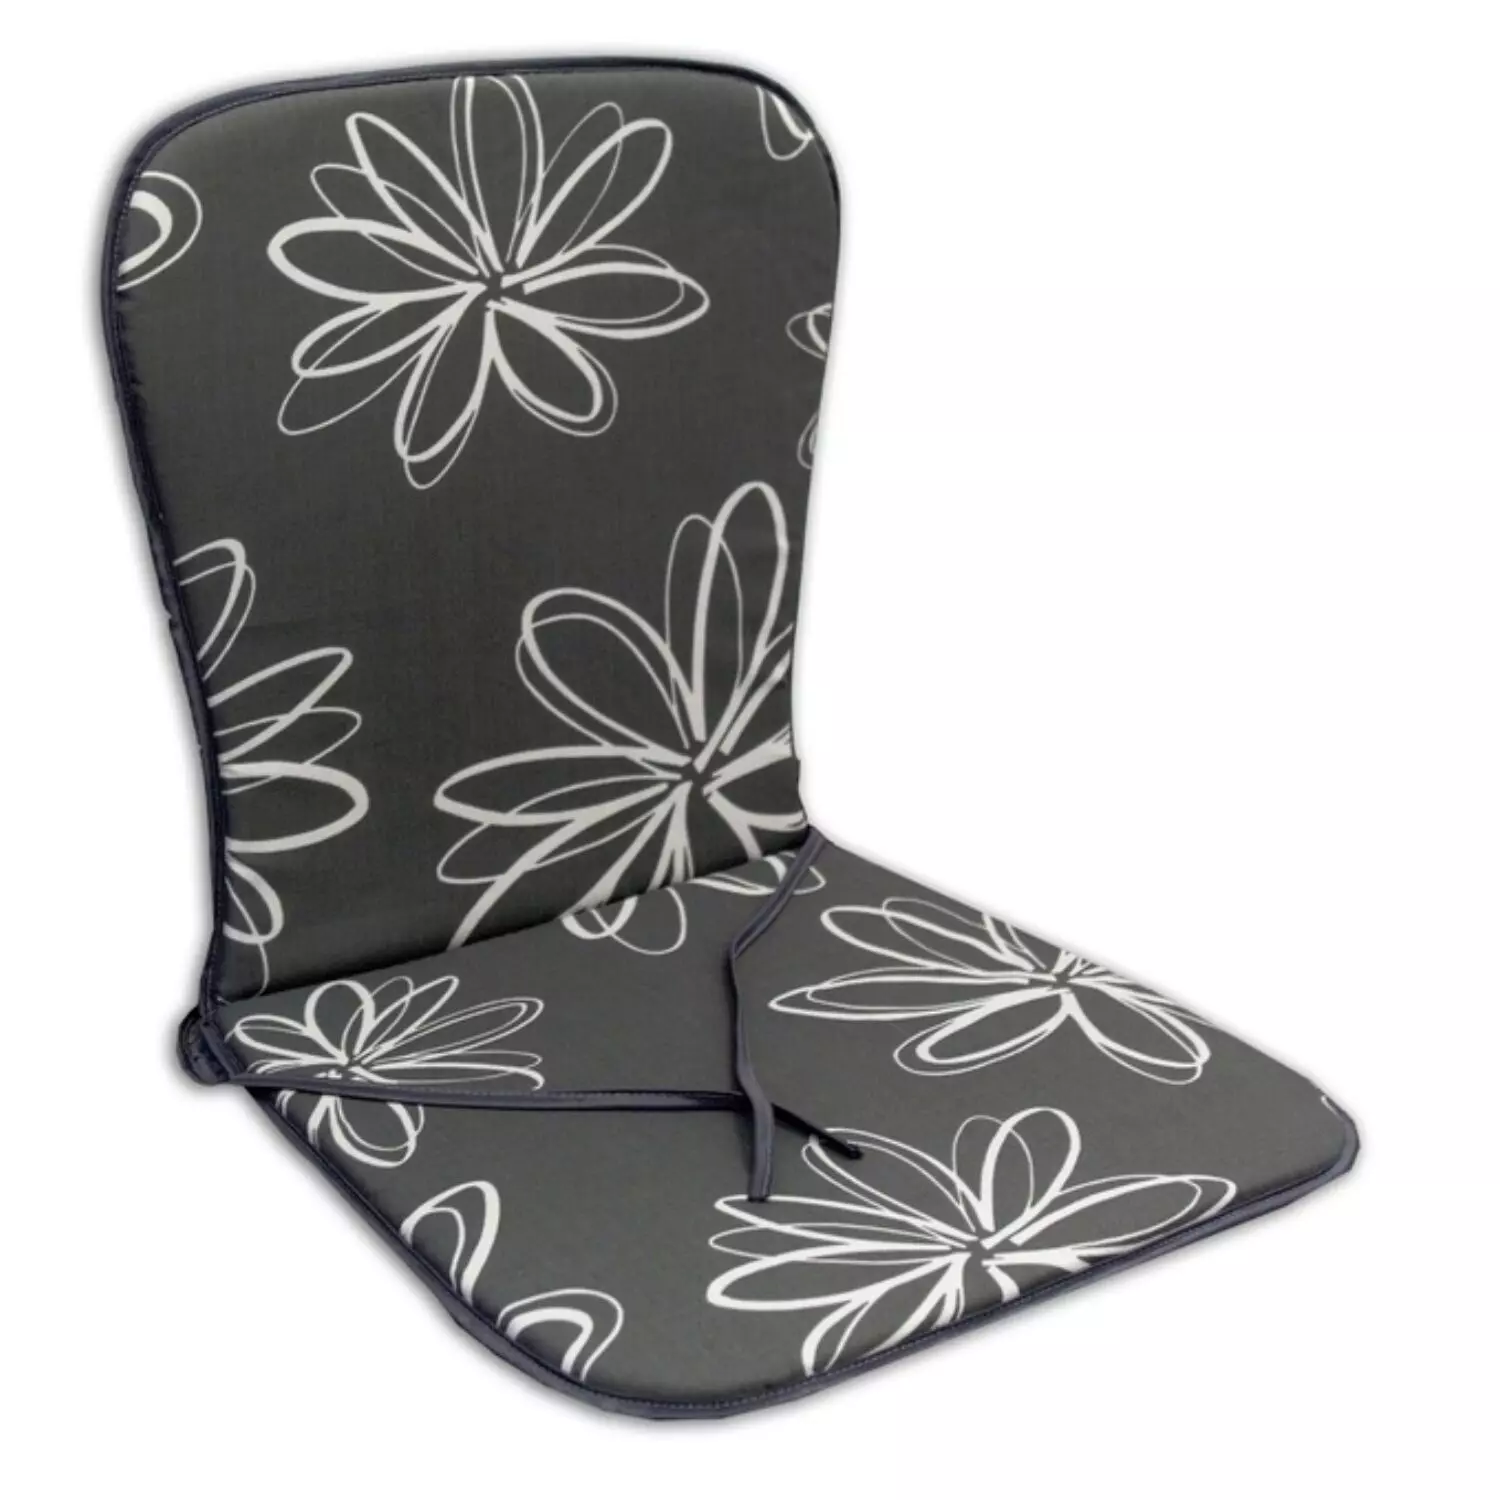 SUN GARDEN SAMOA ülőpárna alacsony támlás székekhez - virágmintás